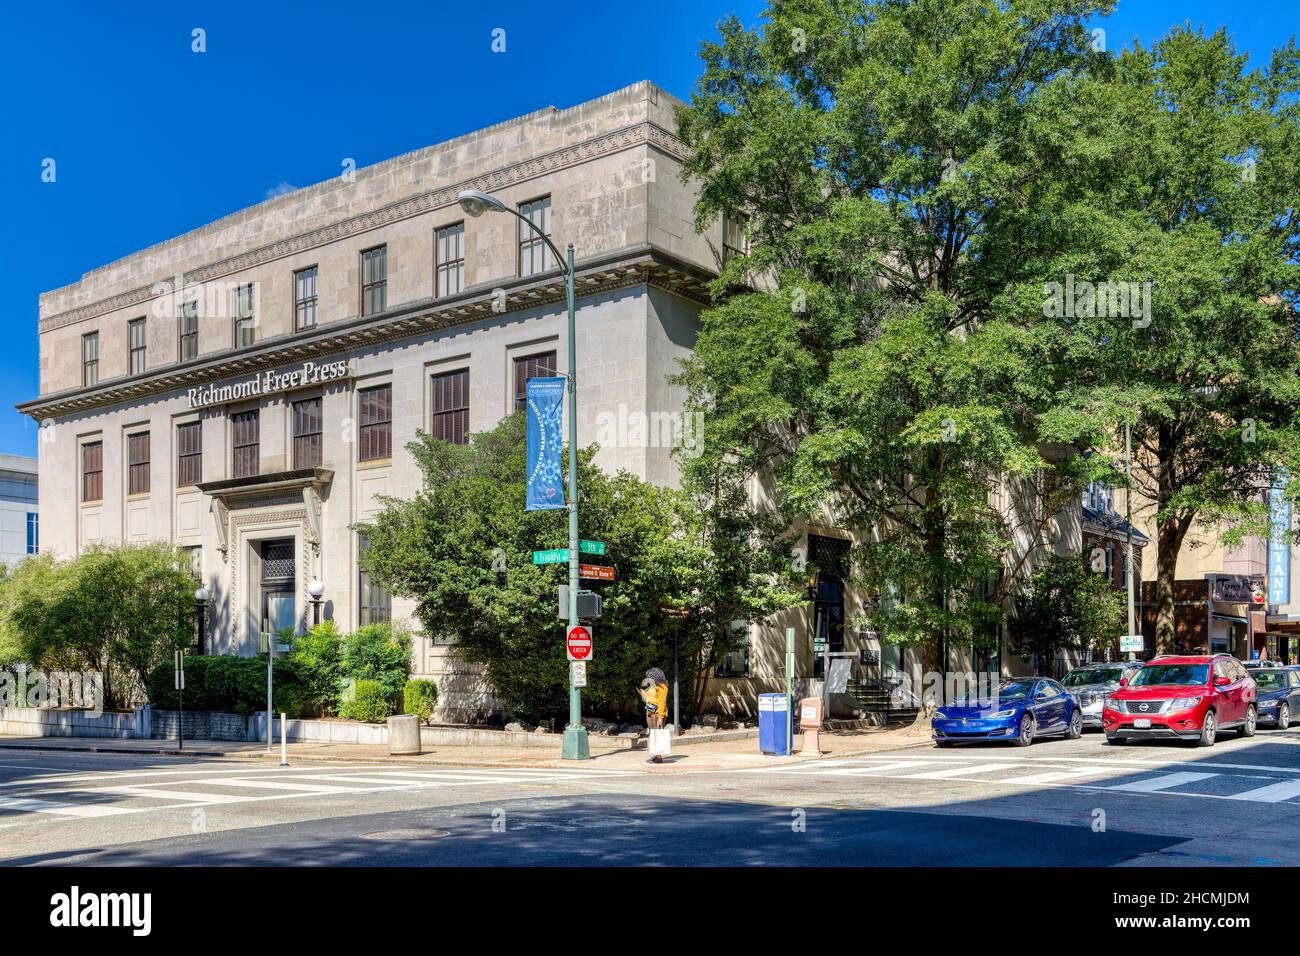 Imperial Building, Richmond Free Press, edificio neoclassico al 422 East Franklin Street. Foto Stock